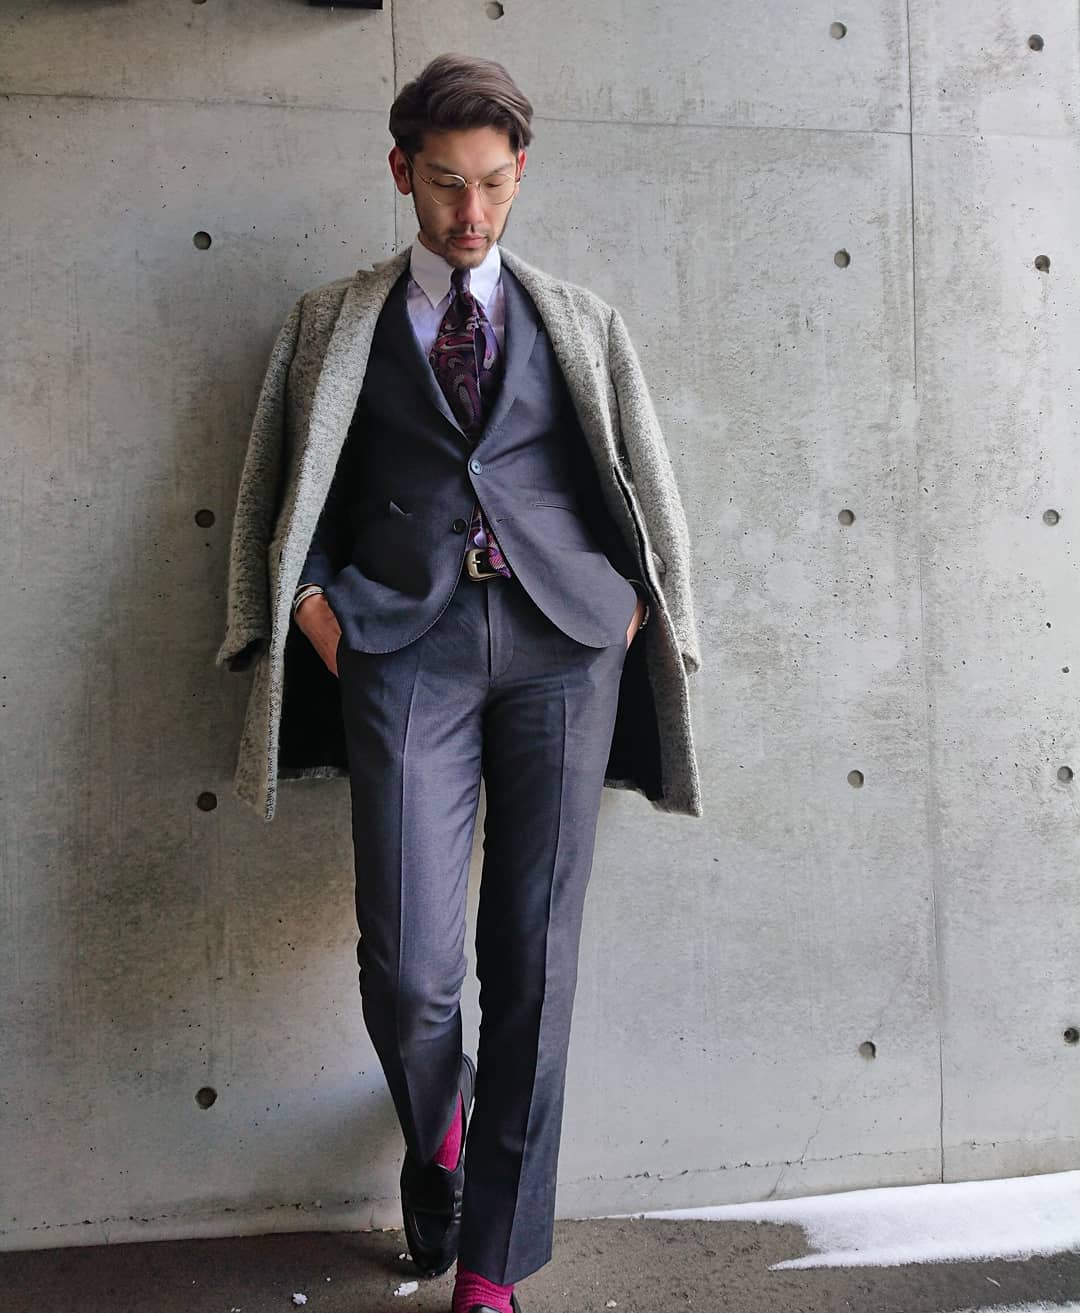 Purple Tie With Grey Suit -ryochon0728